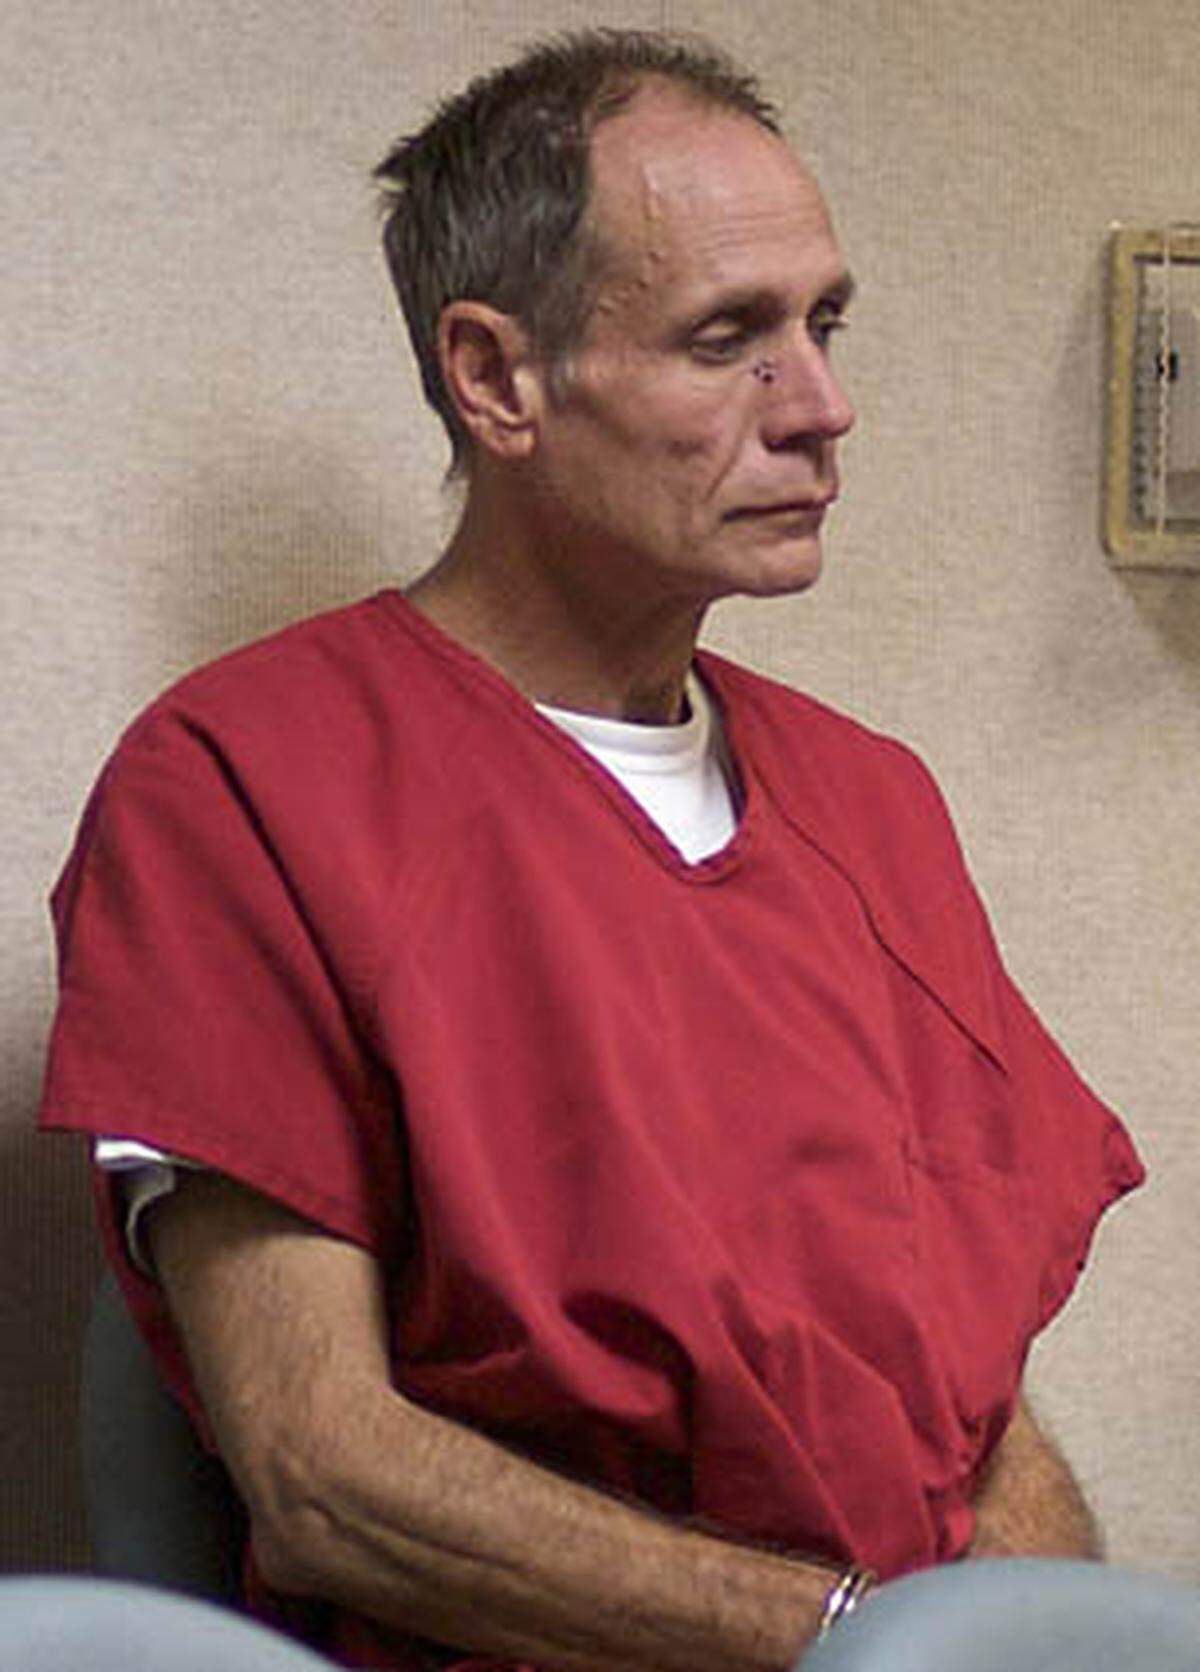 Garrido verbüßte von 1977 bis 1988 eine Haftstrafe wegen Entführung und eines Sexualdelikts. In Reno (Nevada) hatte der damals 25-Jährige eine junge Frau in einem Schuppen eingeschlossen und vergewaltigt. Ursprünglich war er zu 50 Jahren Haft verurteilt wurden, kam aber nach elf Jahren auf Bewährung frei.